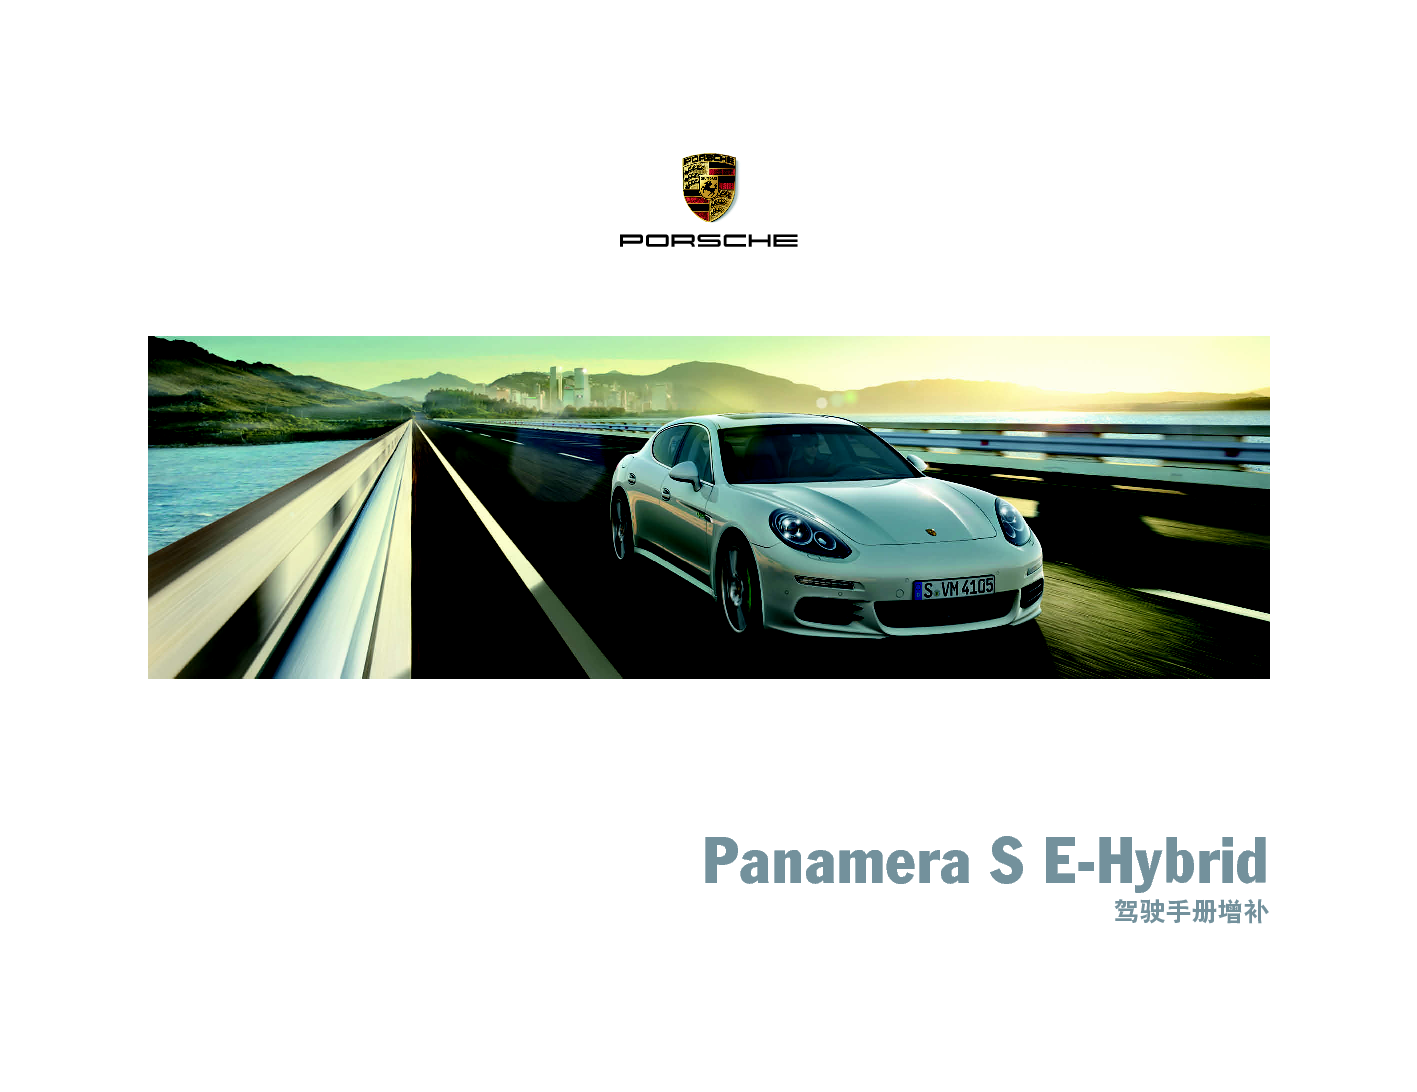 保时捷 Porsche Panamera S E-Hybrid 10/2014增补 使用说明书 封面